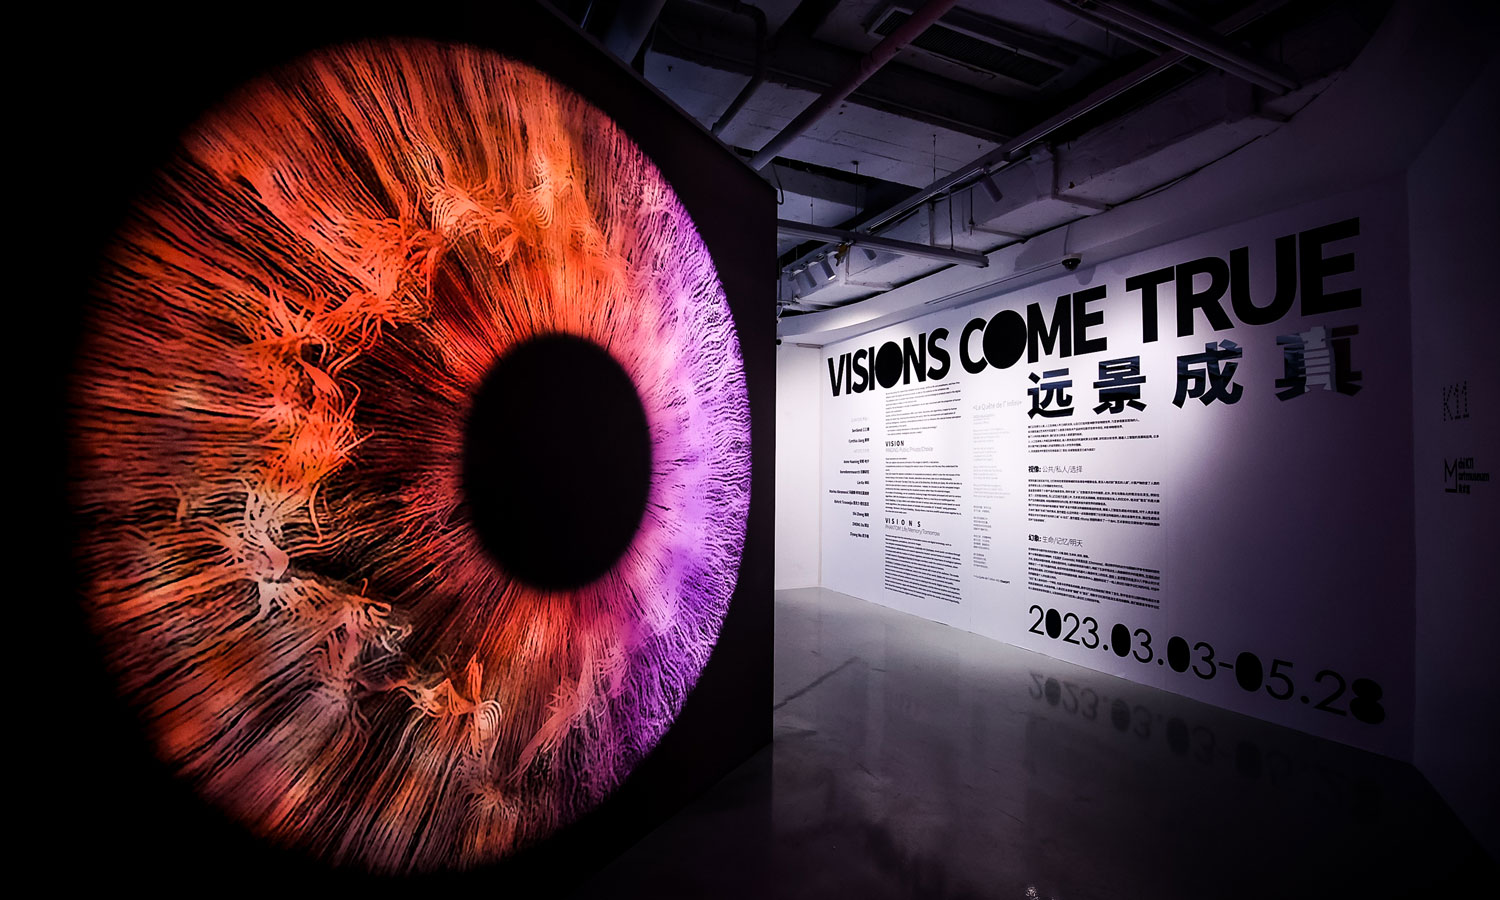 上海 K11 联袂 8 位跨学科艺术家，举办「远景成真」展览